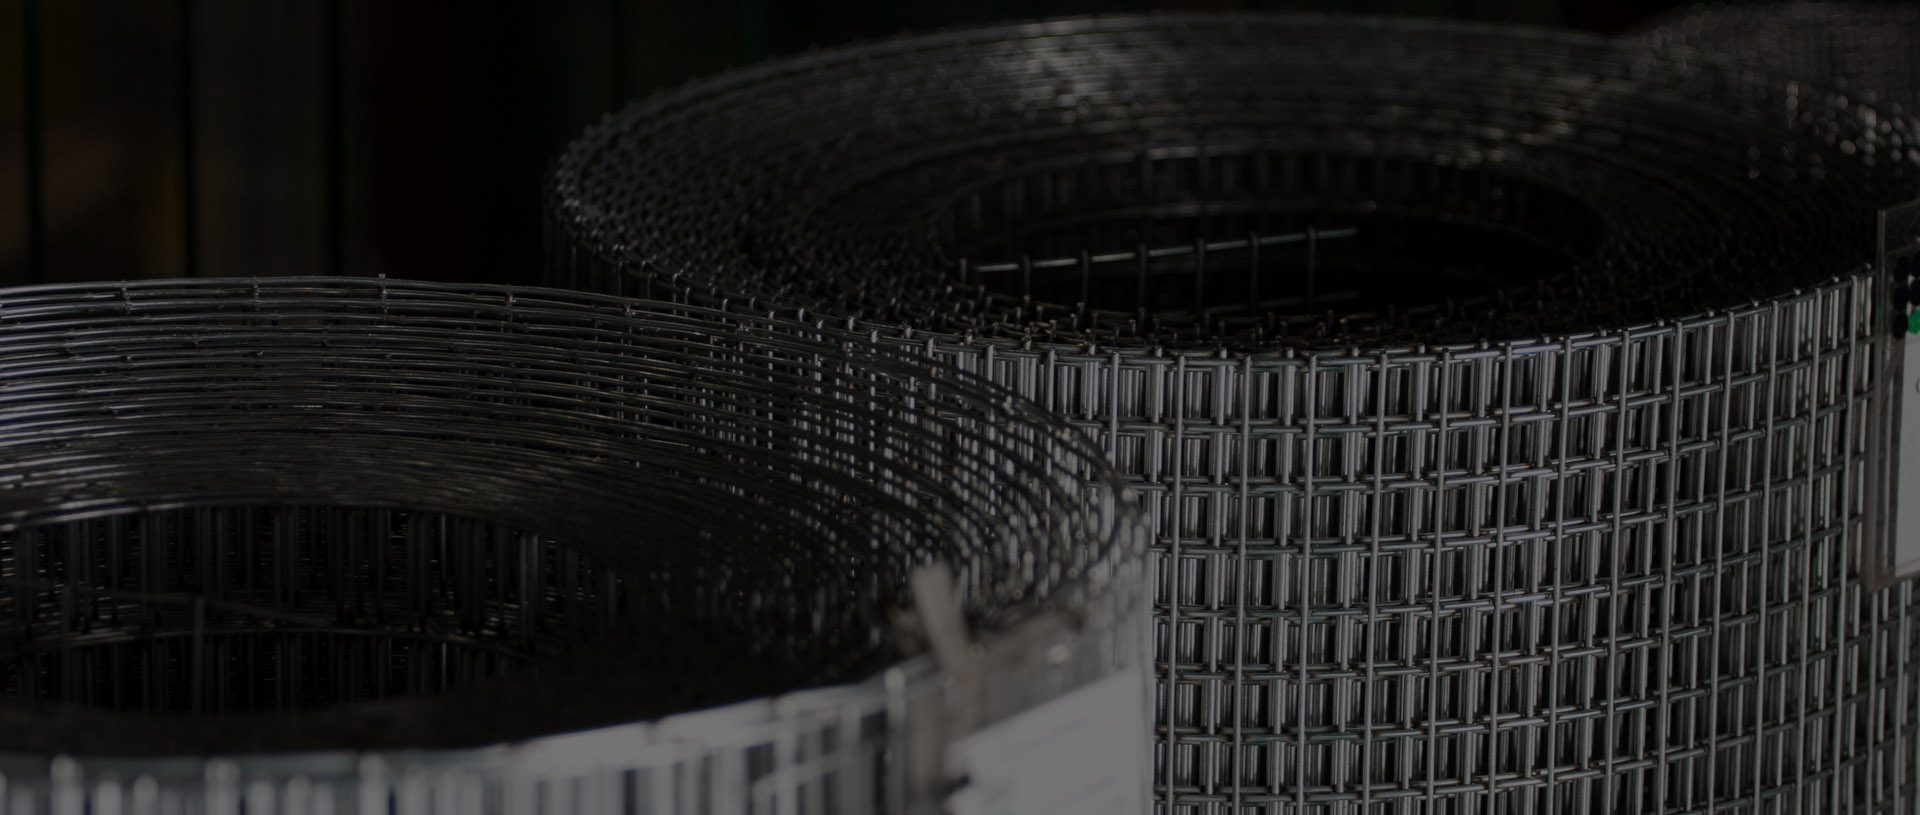 永昇鐵網製造廠-金屬網、不銹鋼網、平織網，50年專業鐵網製造經驗，各式織網品質優良，行銷全球各地